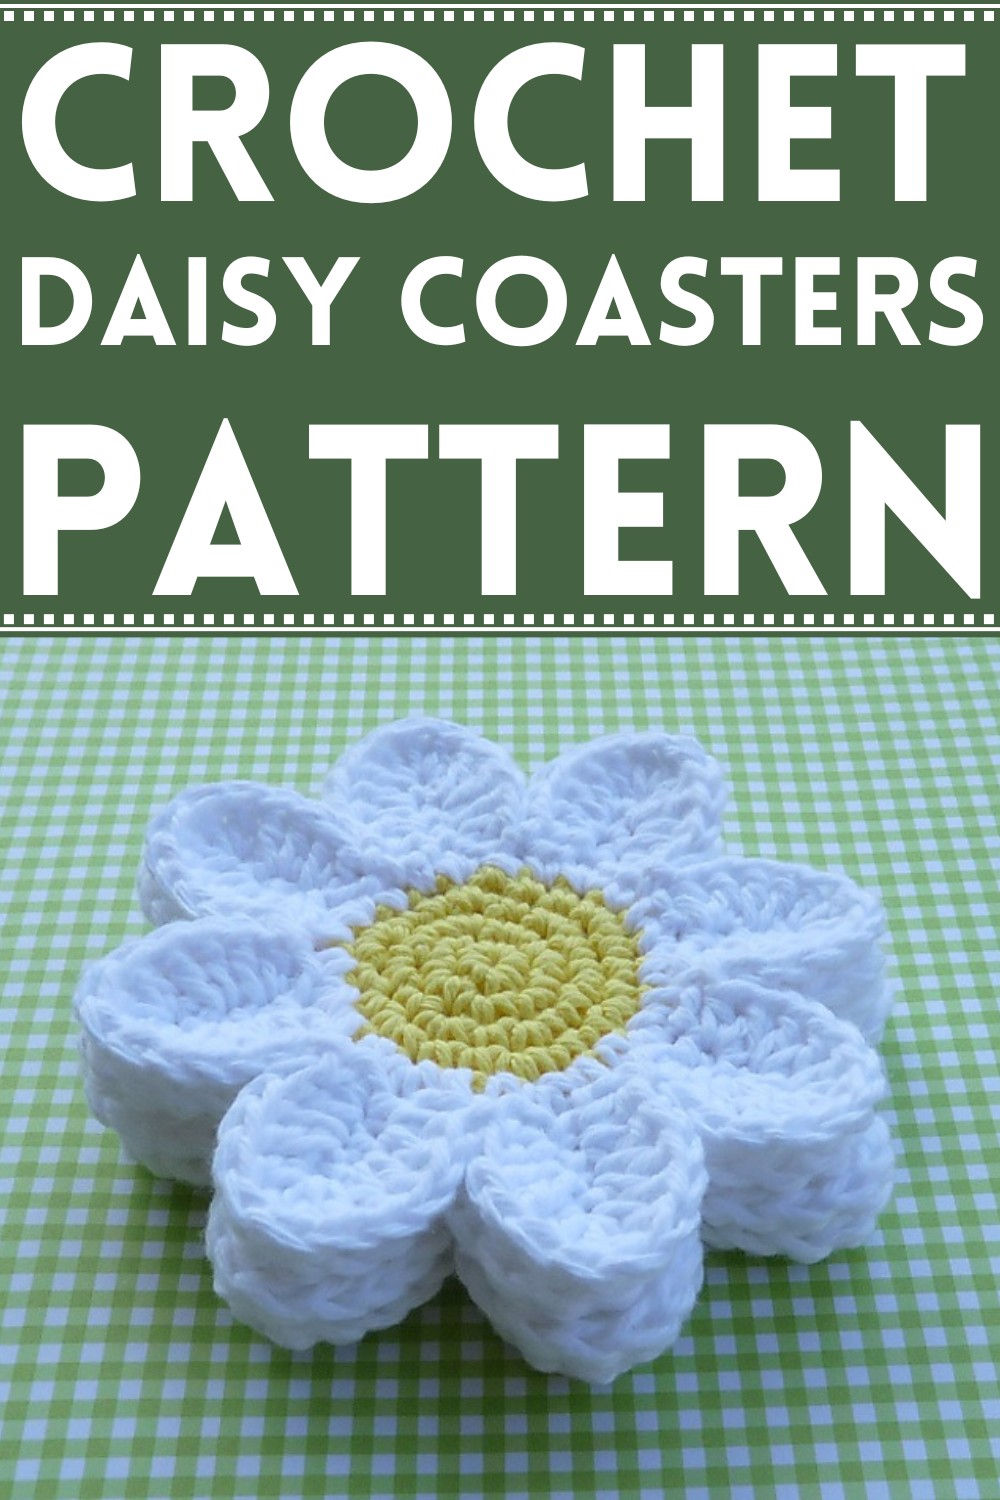 Daisy Coasters